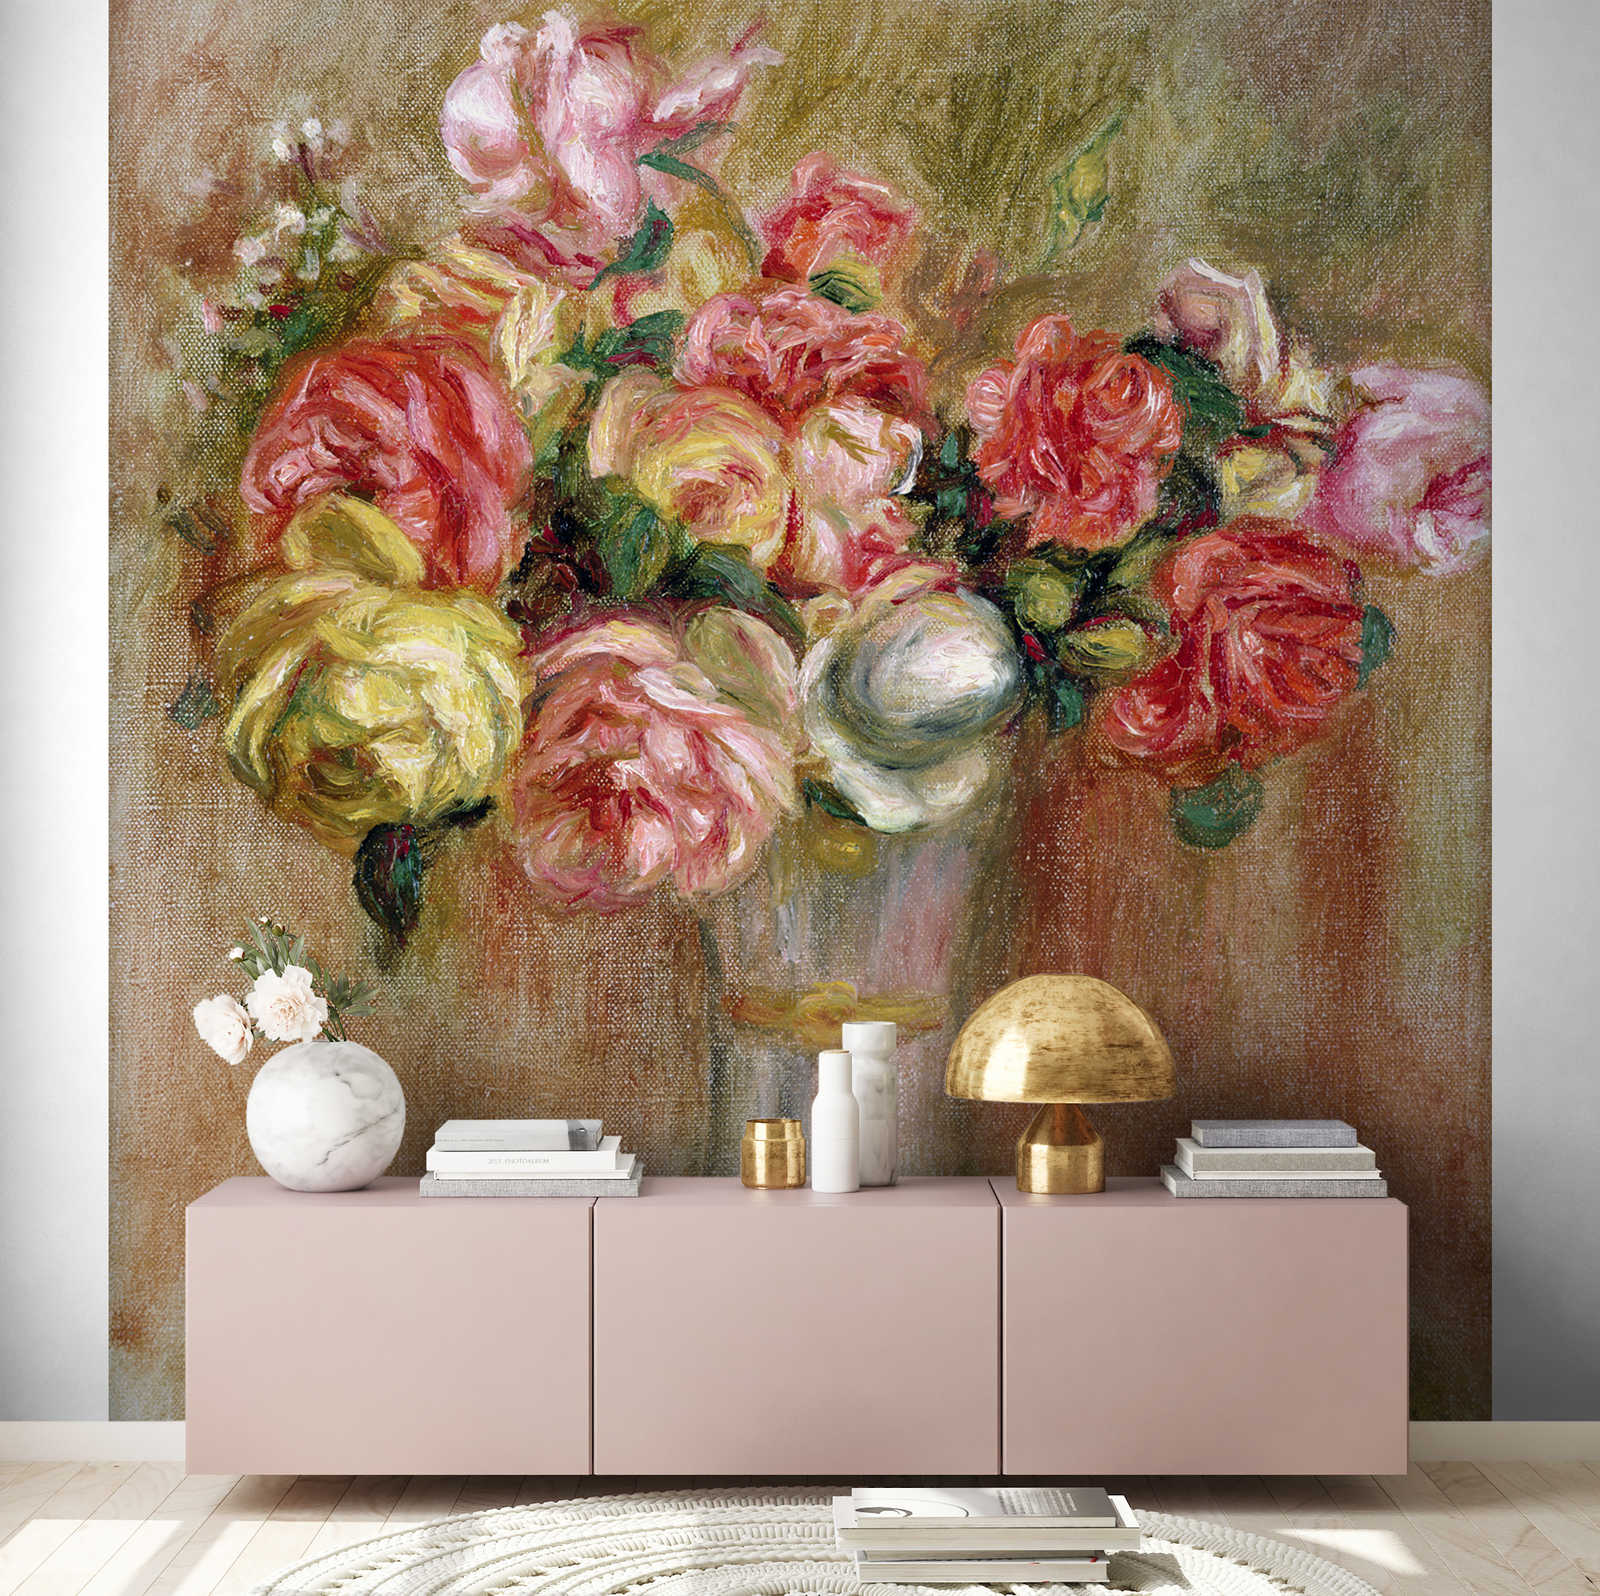             Mural "Rosas en un jarrón de Sevres" de Pierre Auguste Renoir
        